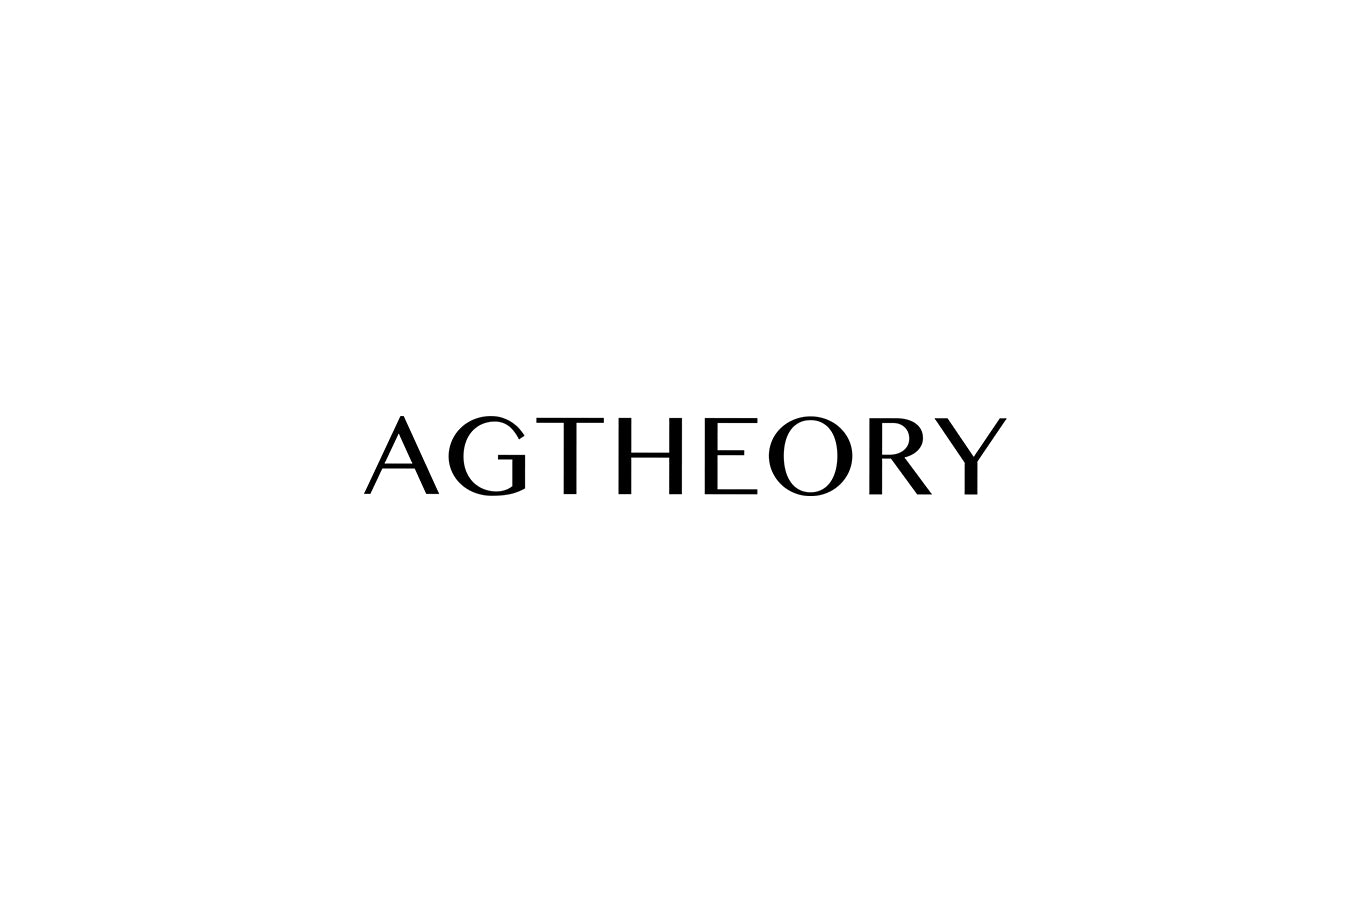 AGTHEORY